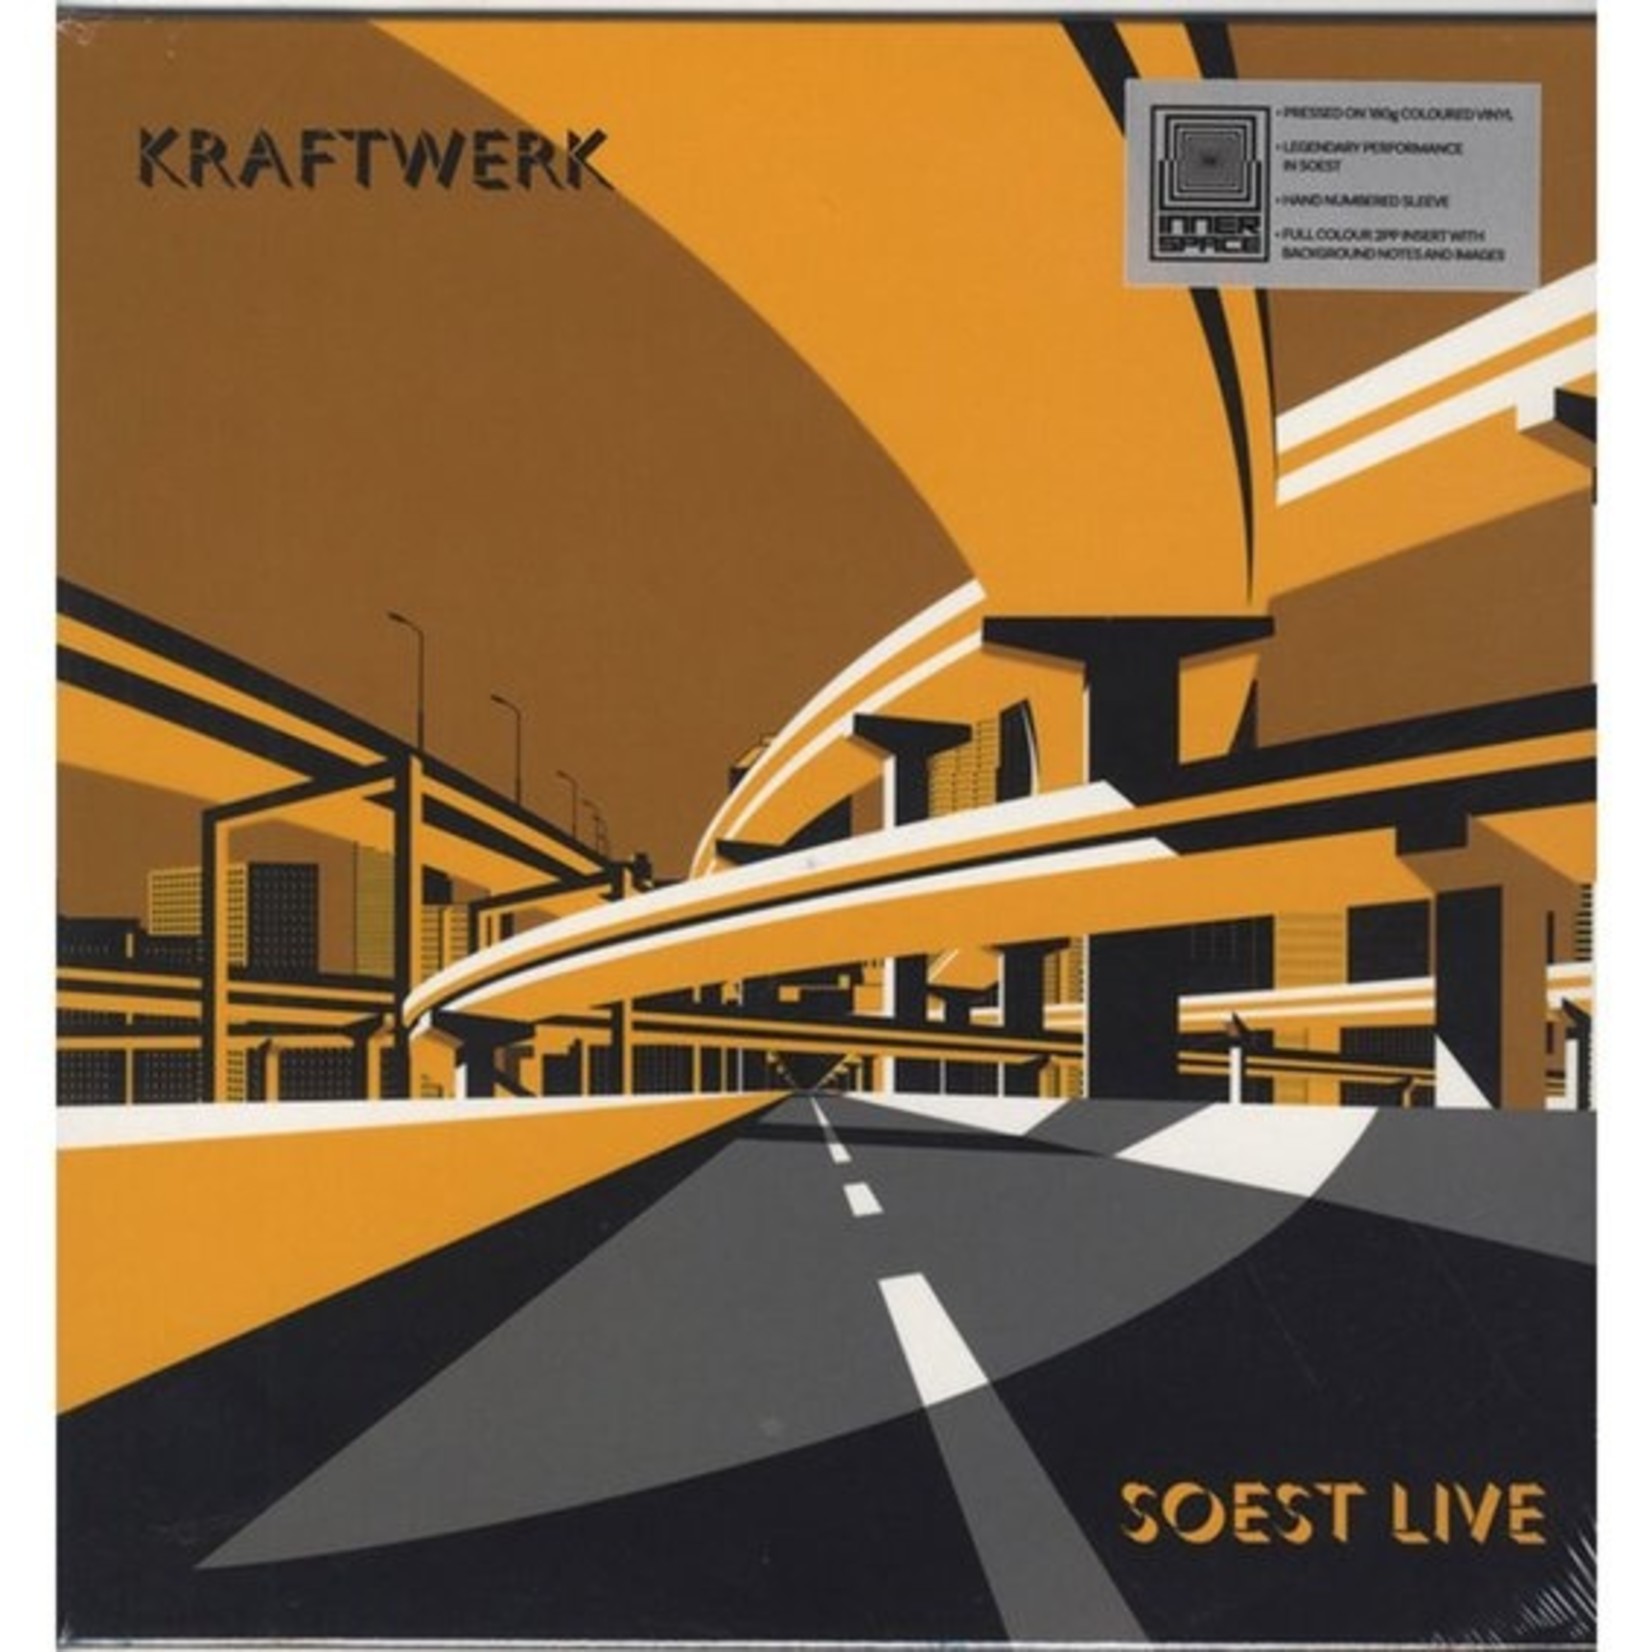 KRAFTWERK - live in Soest LP